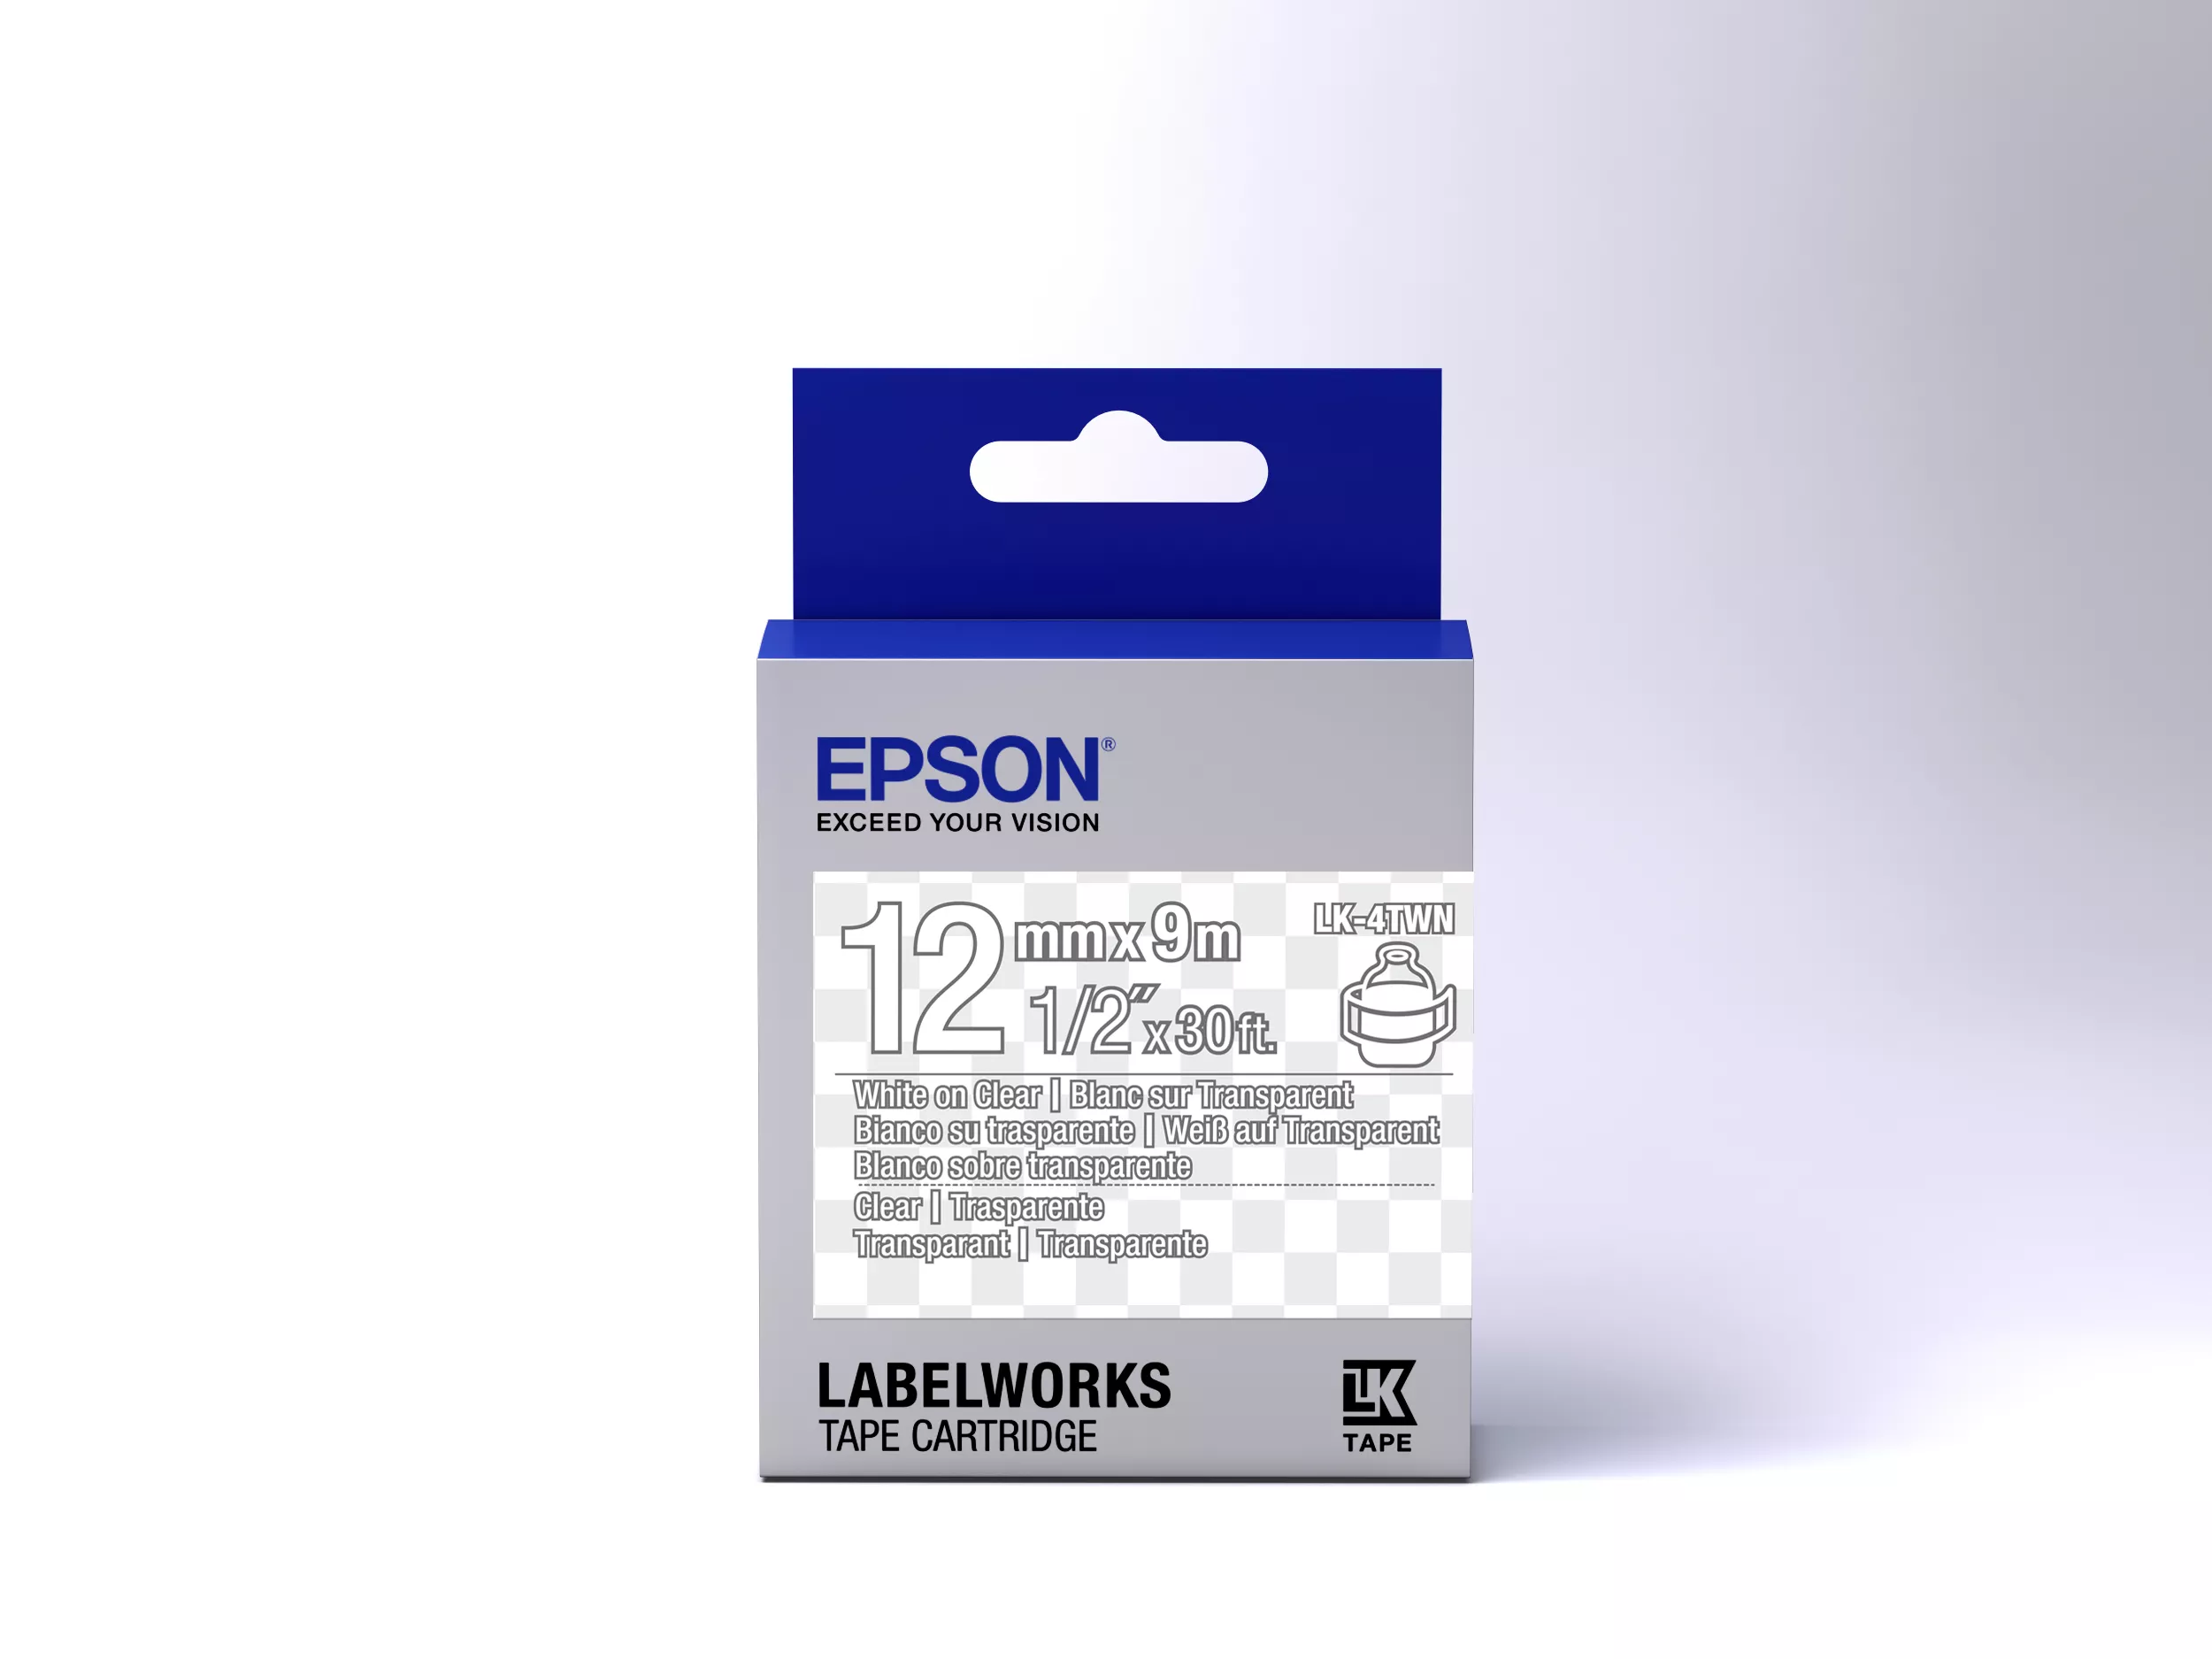 Vente Epson LK-4TWN - Transparent - Blanc sur Transparent Epson au meilleur prix - visuel 2